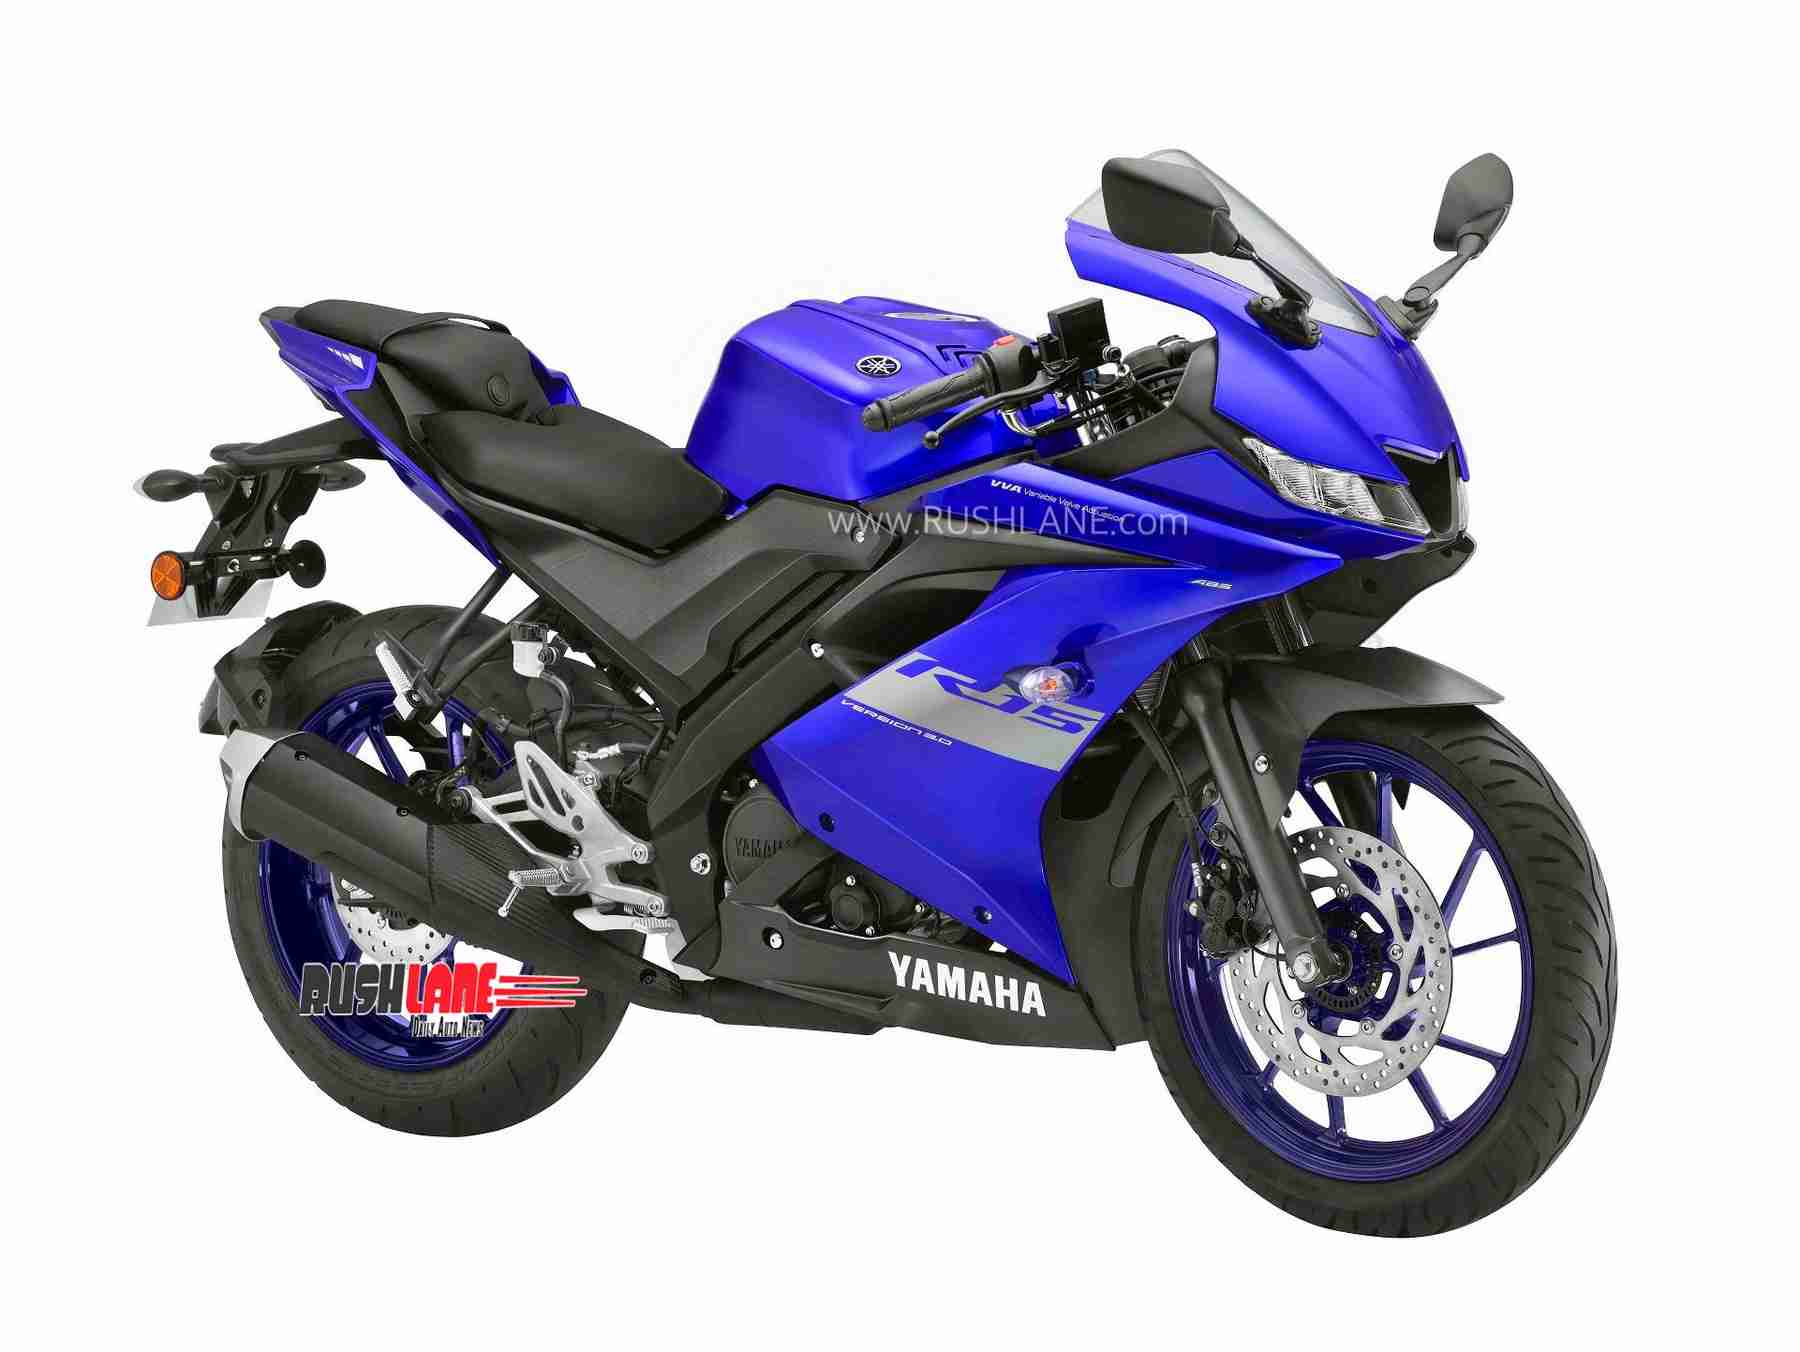 Yamaha R15 BS6 launch price